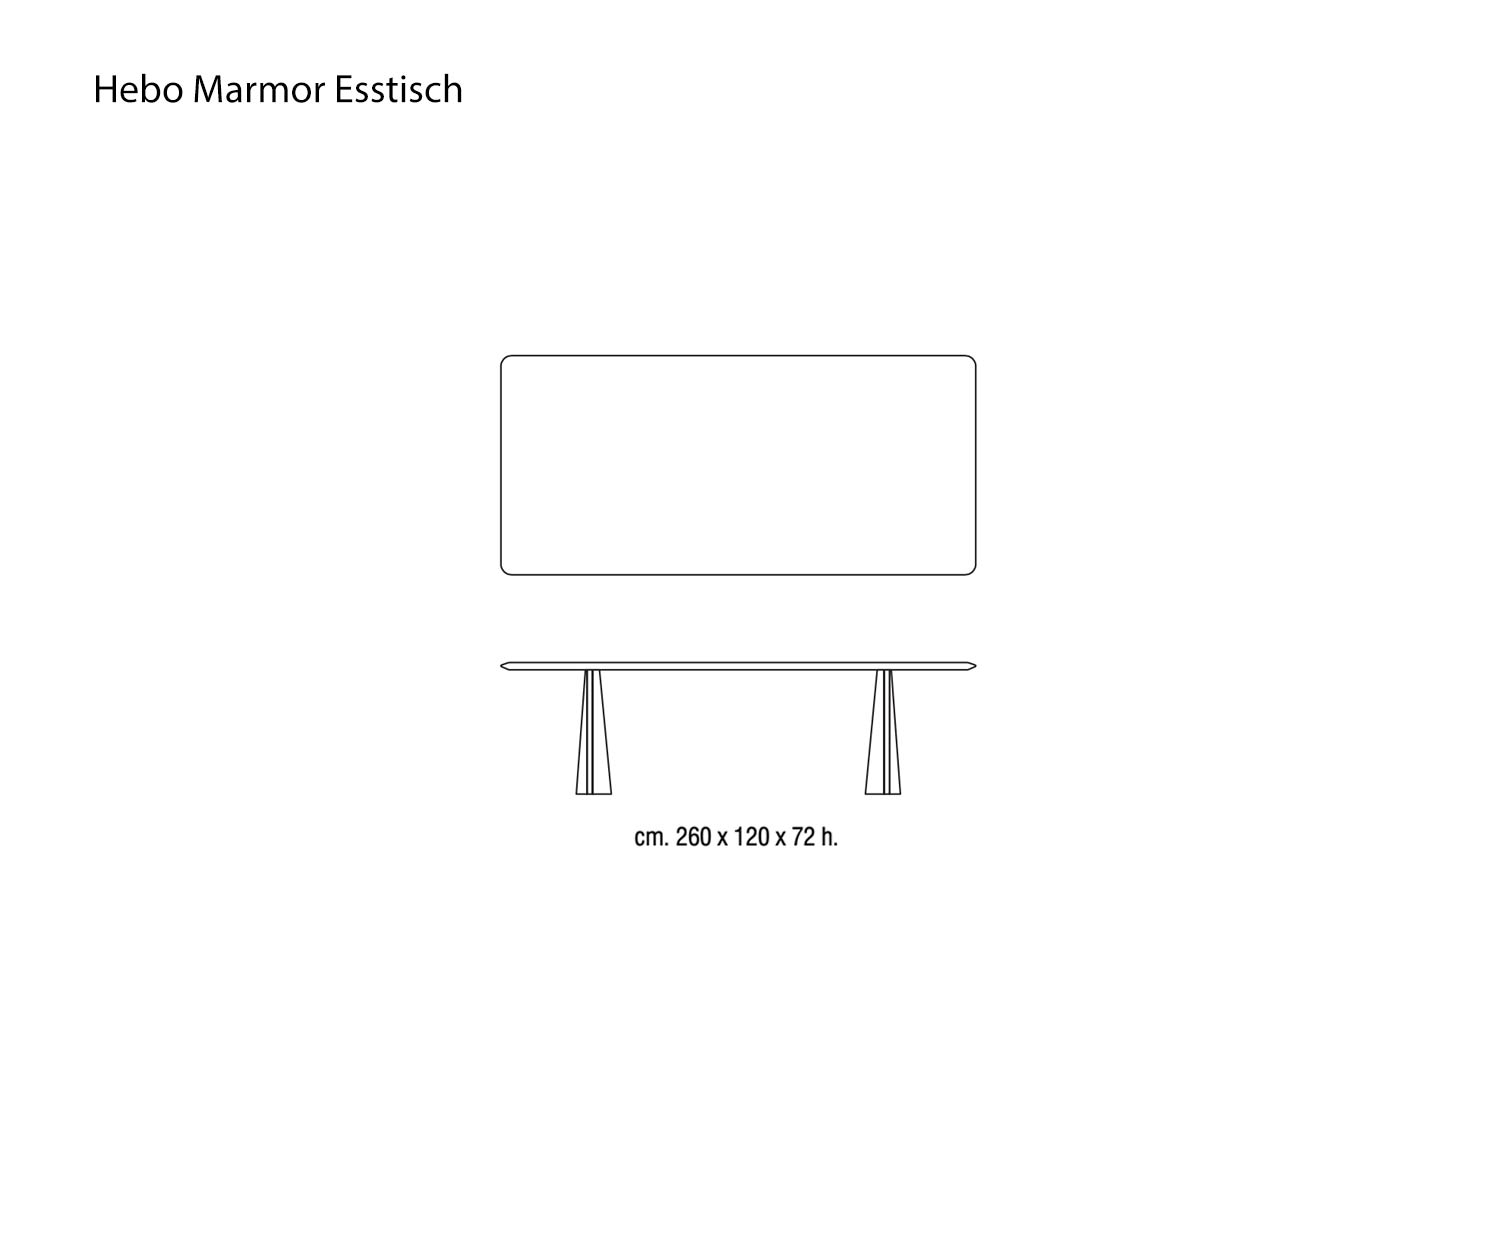 Designer Esszimmer Tisch Hebo aus Marmor Skizze Maße Größen Größenangaben